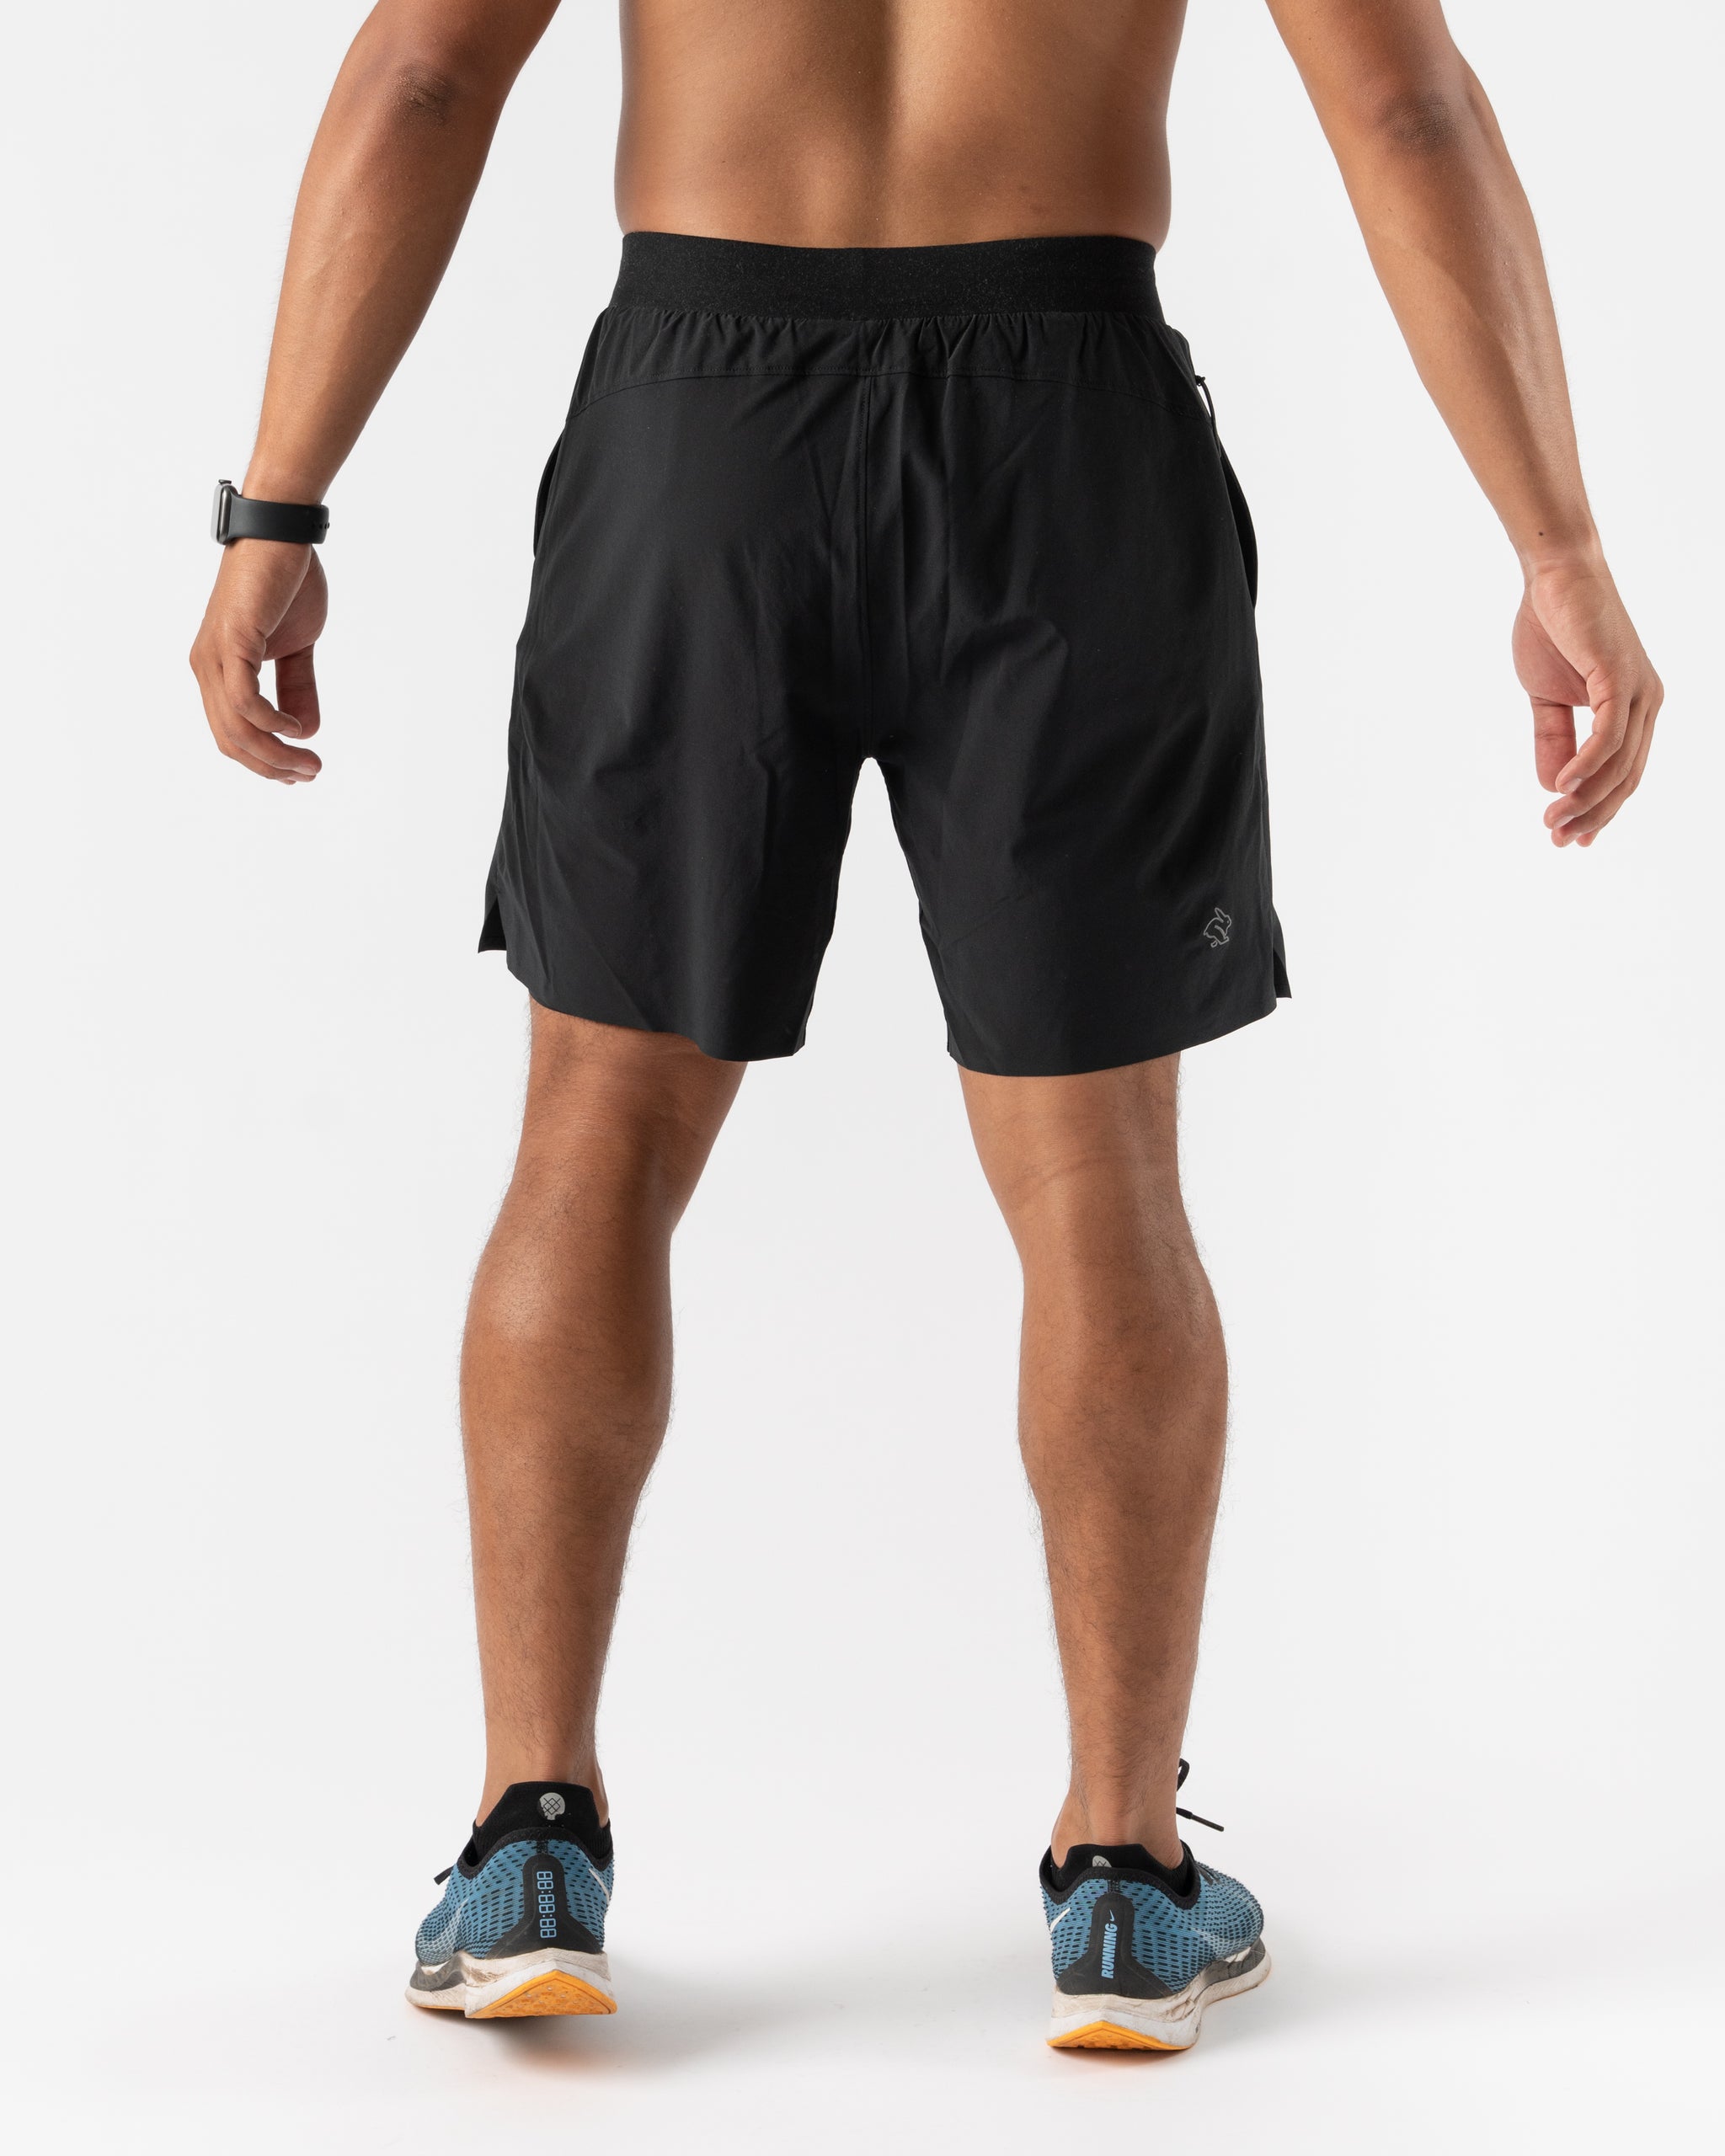 Men's Running Shorts with Zipper Pockets 7 Inch Lightweight Quick